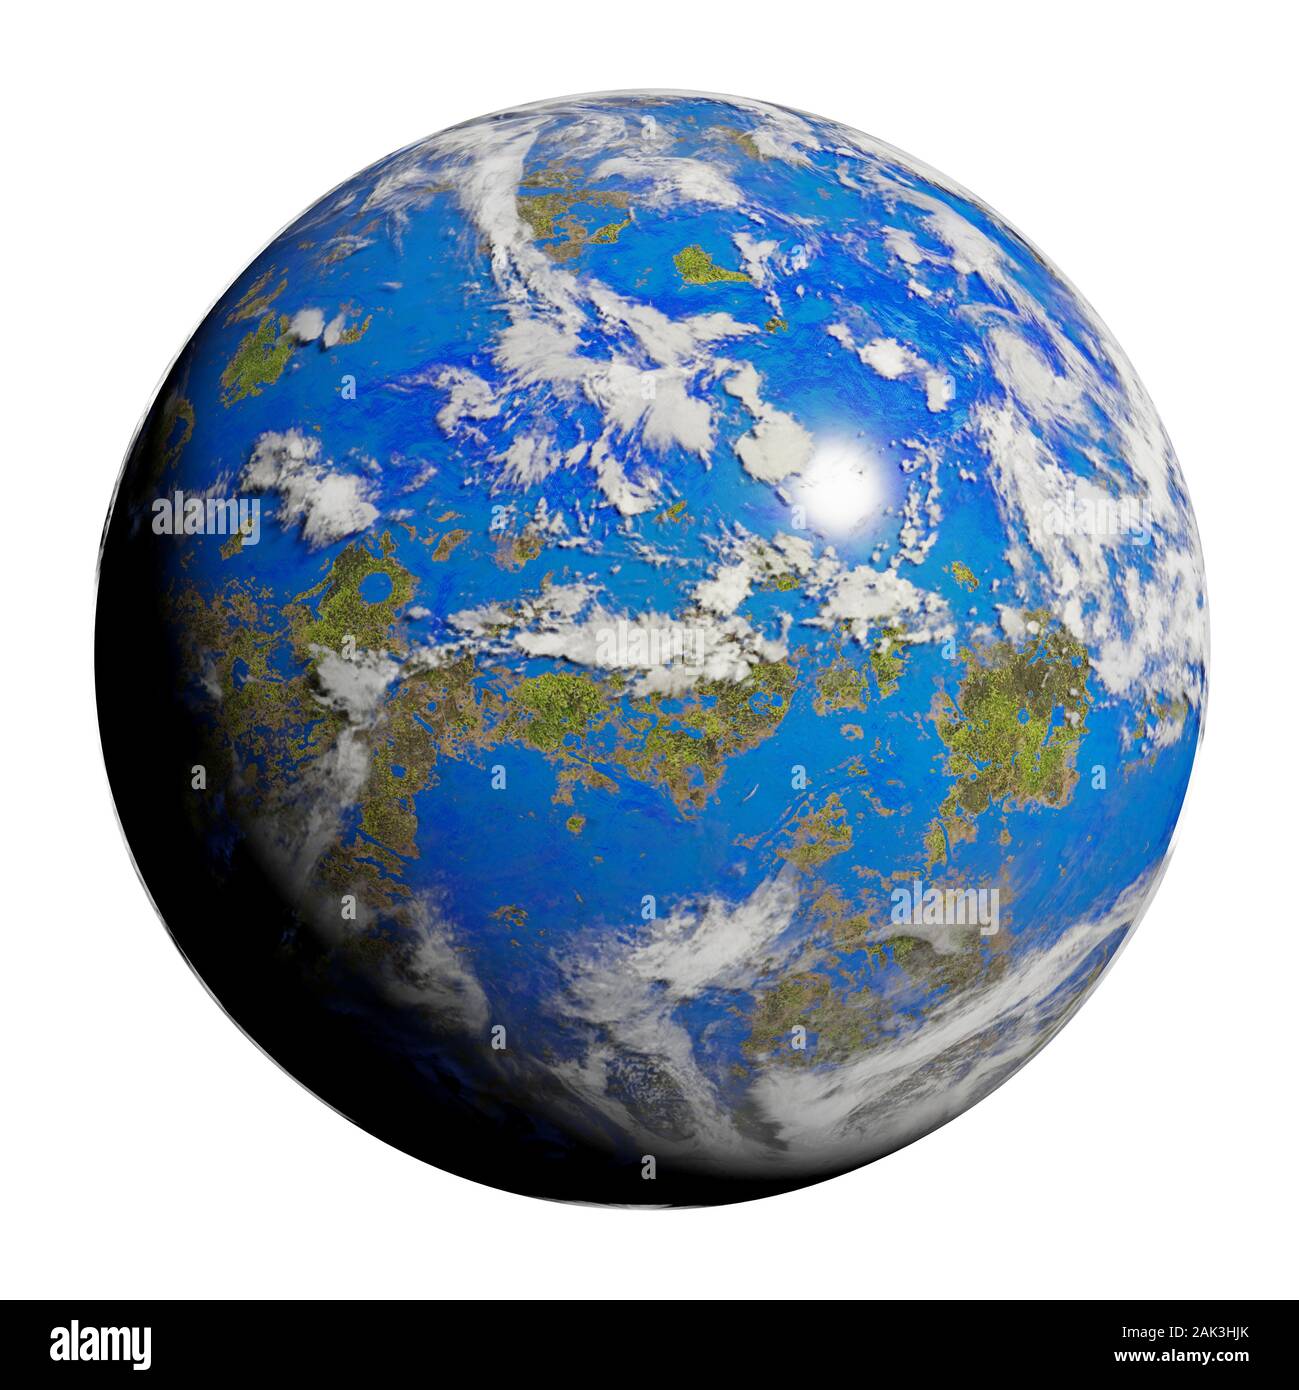 La Terra come pianeta alieno, friendly exoplanet con vita in superficie isolata su sfondo bianco Foto Stock